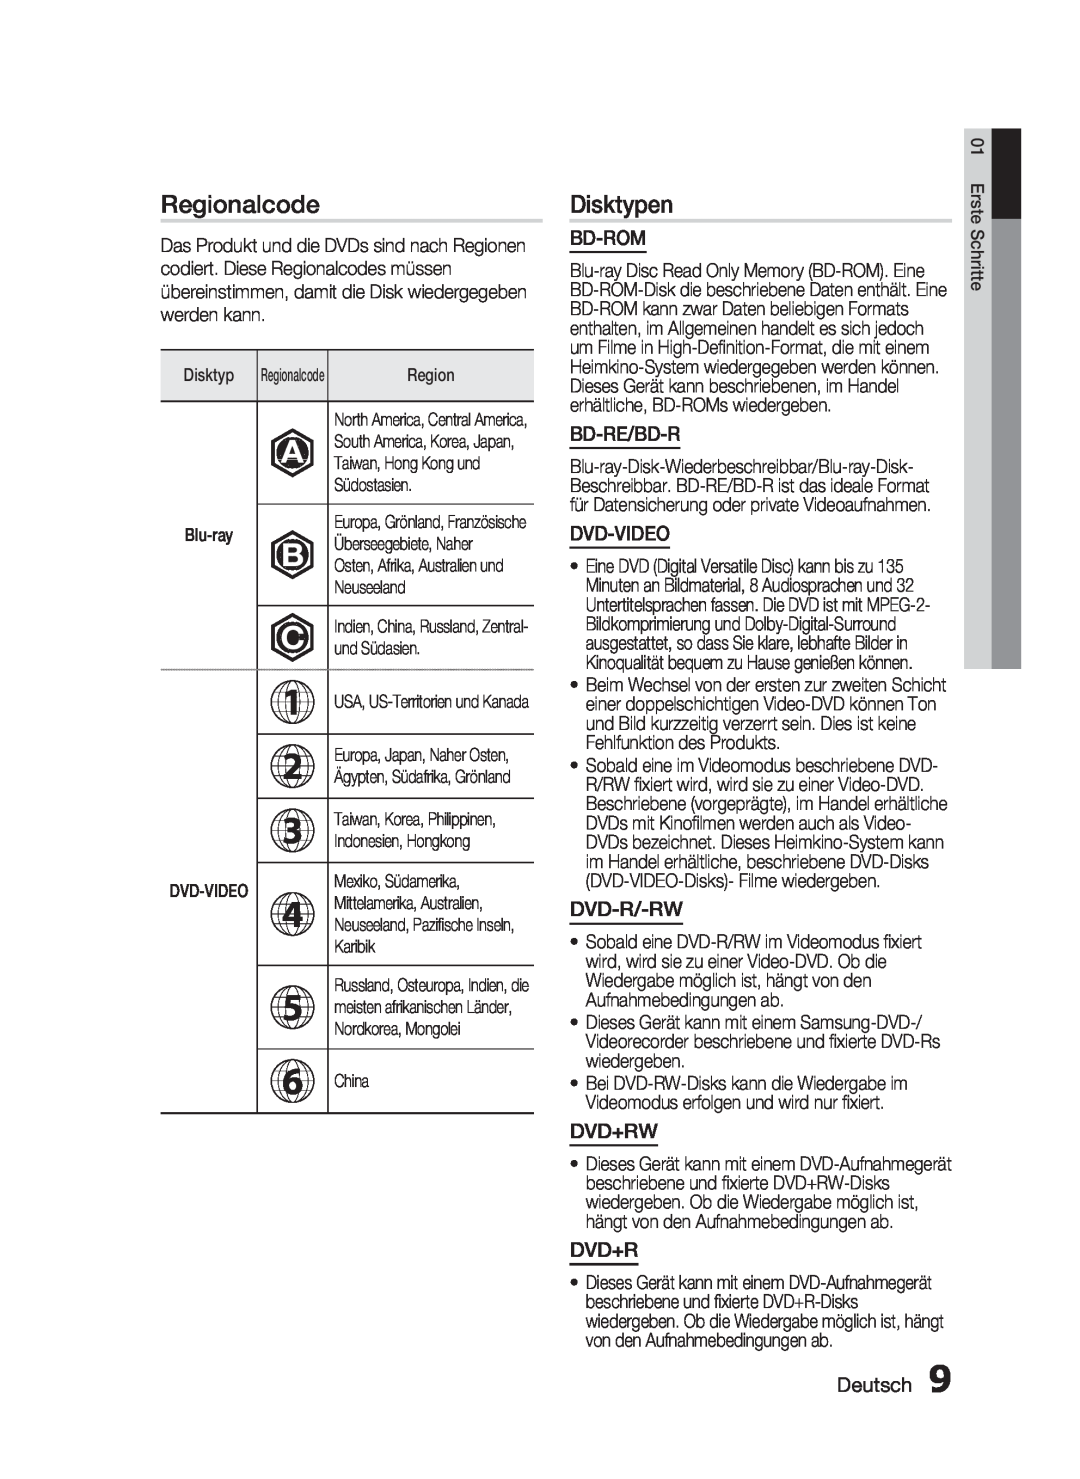 Samsung HT-C6200/XEF manual Regionalcode, Disktypen, Bd-Rom, Bd-Re/Bd-R, Dvd-Video, Dvd-R/-Rw, Dvd+Rw, Deutsch 